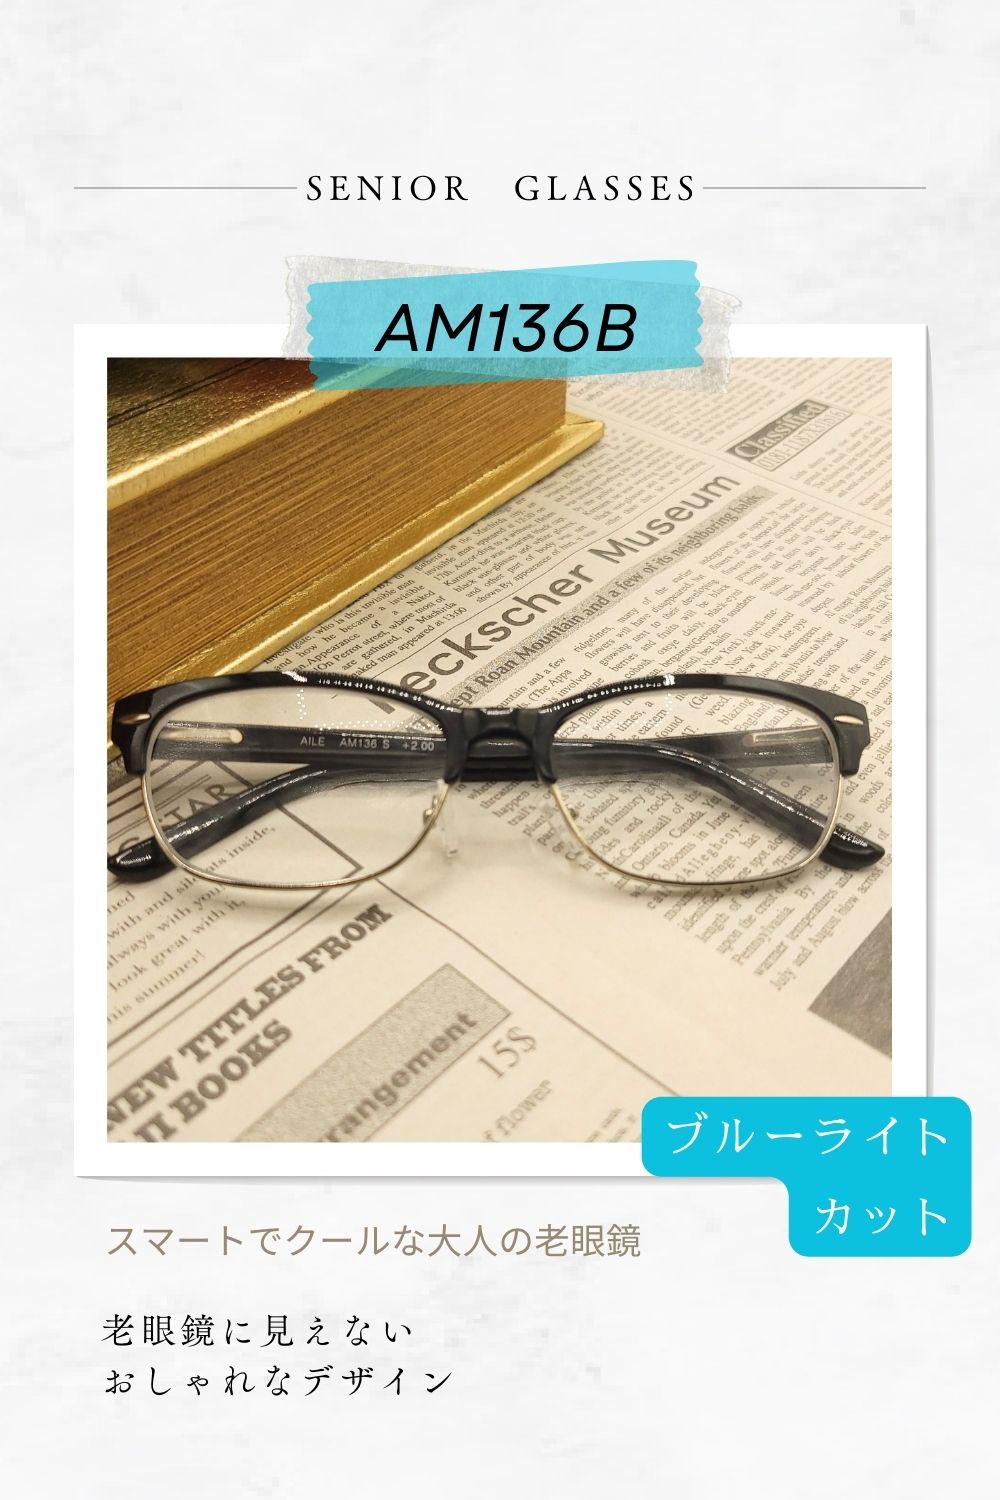 スマートでクールな大人の老眼鏡 老眼鏡に見えないおしゃれなデザイン ブルーライトカットレンズ採用シニアグラス AM136B  | 有限会社エール